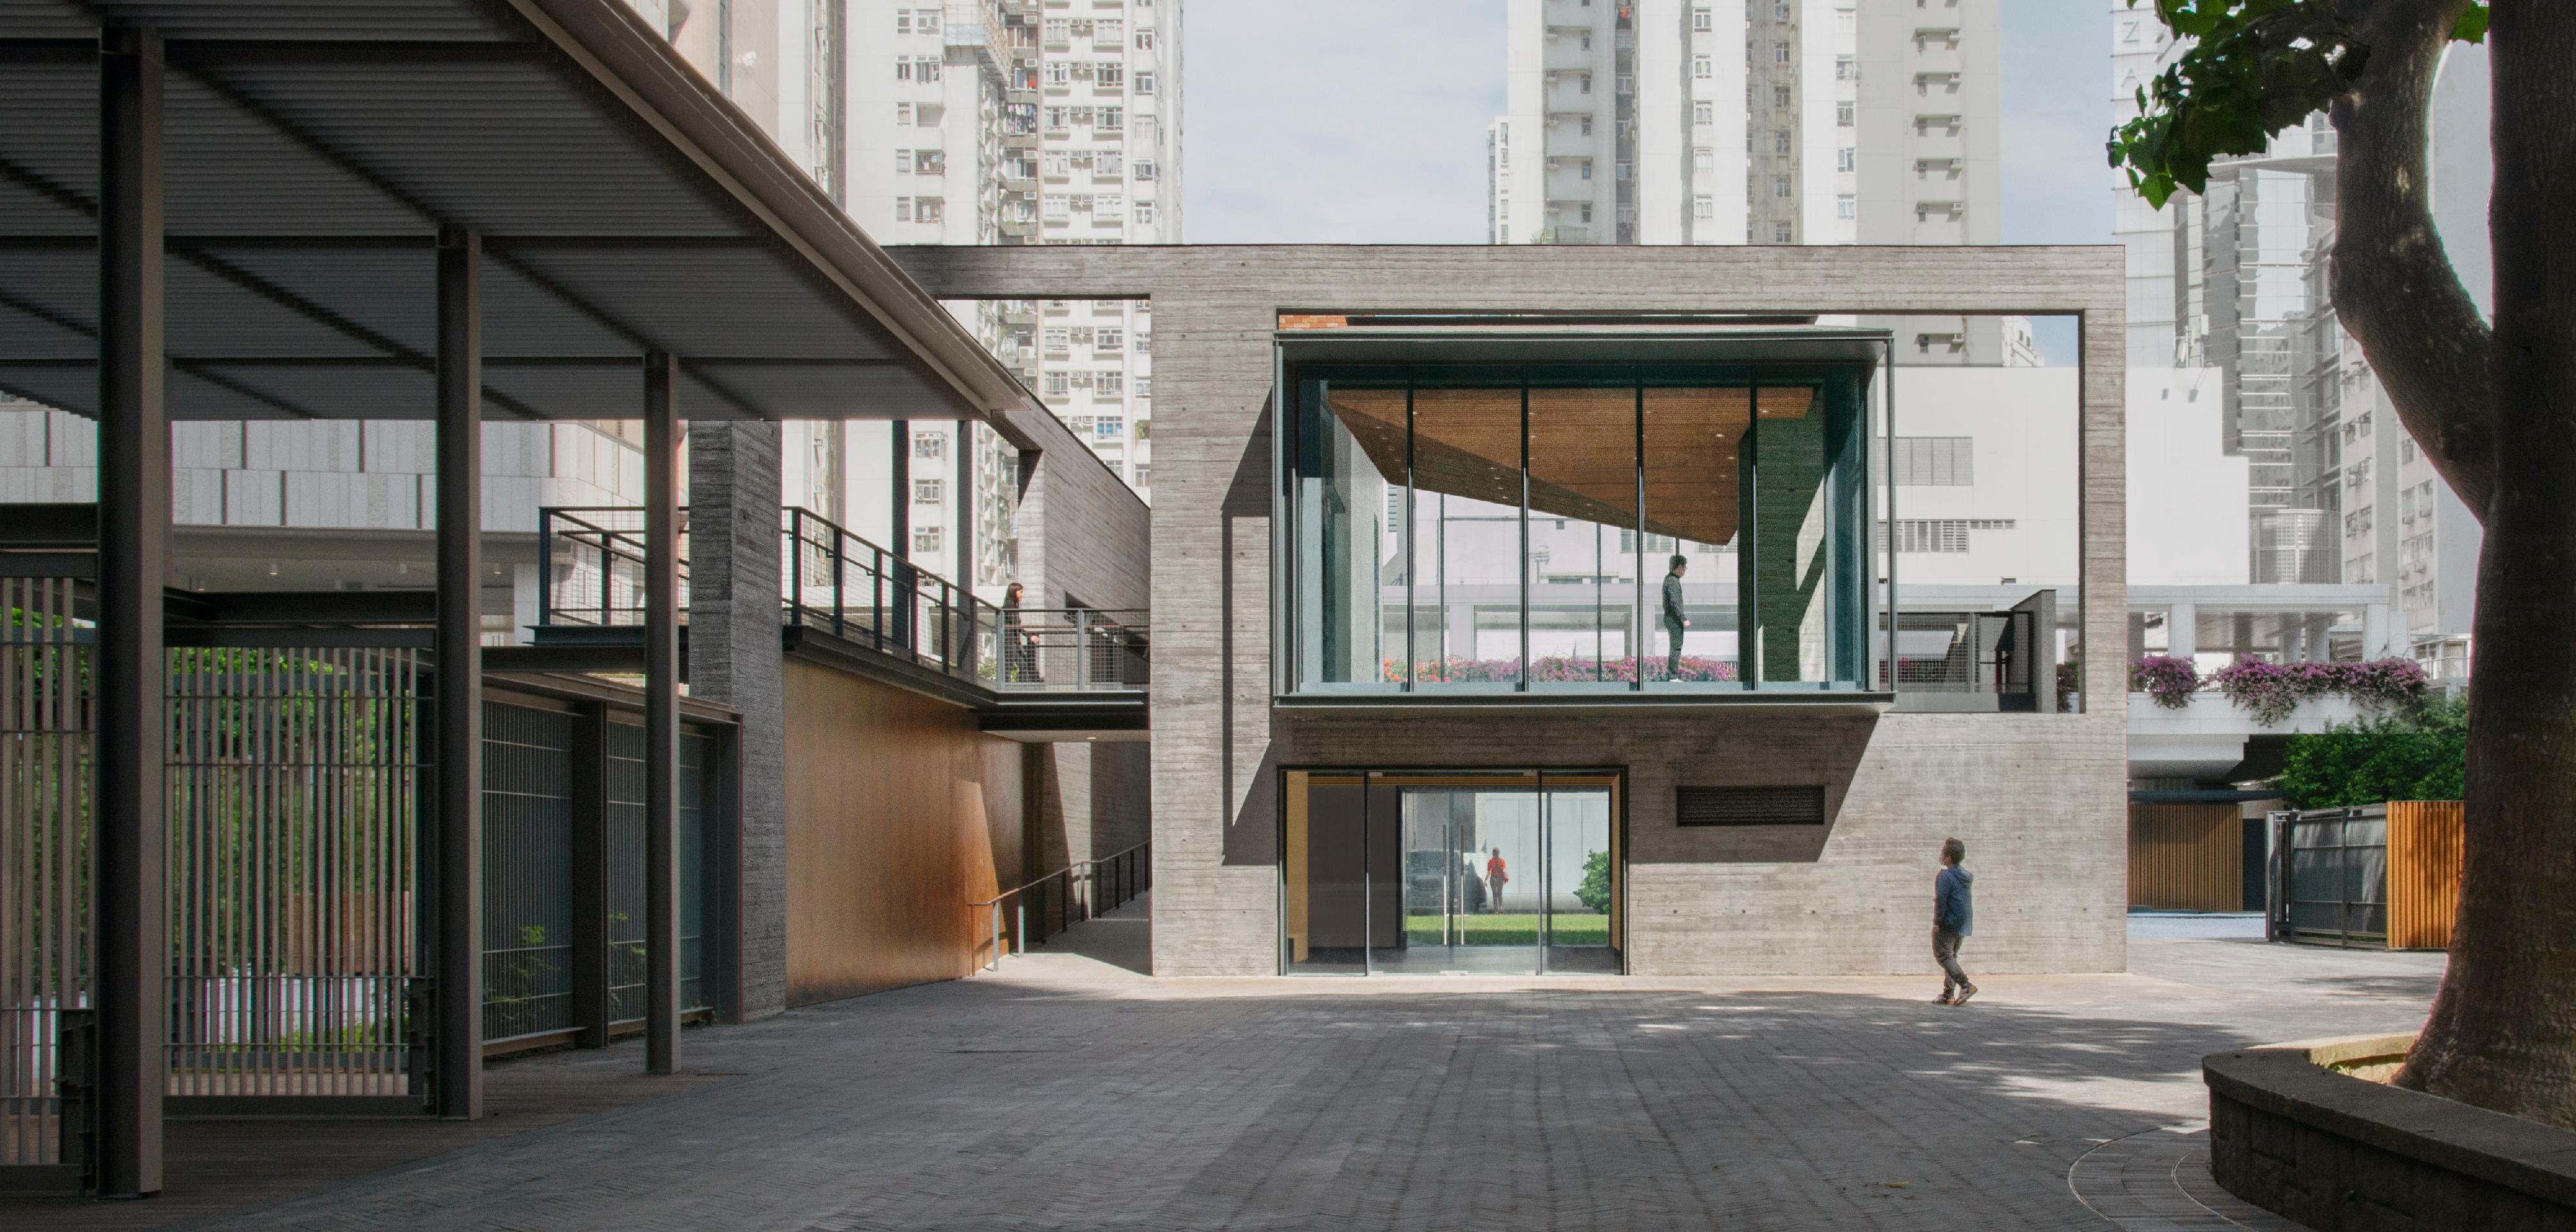 「『油街實現』藝術空間第二期發展」榮獲二○二三年「DFA亞洲最具影響力設計獎」大獎，亦是「香港建築師學會年獎2022／23──會長特別獎狀」的兩個入圍項目之一。圖示油街實現的新藝術空間，除增添不少戶外空間外，亦建有一所兩層高的建築物作展覽及活動用途，已於去年五月起正式向公眾開放。